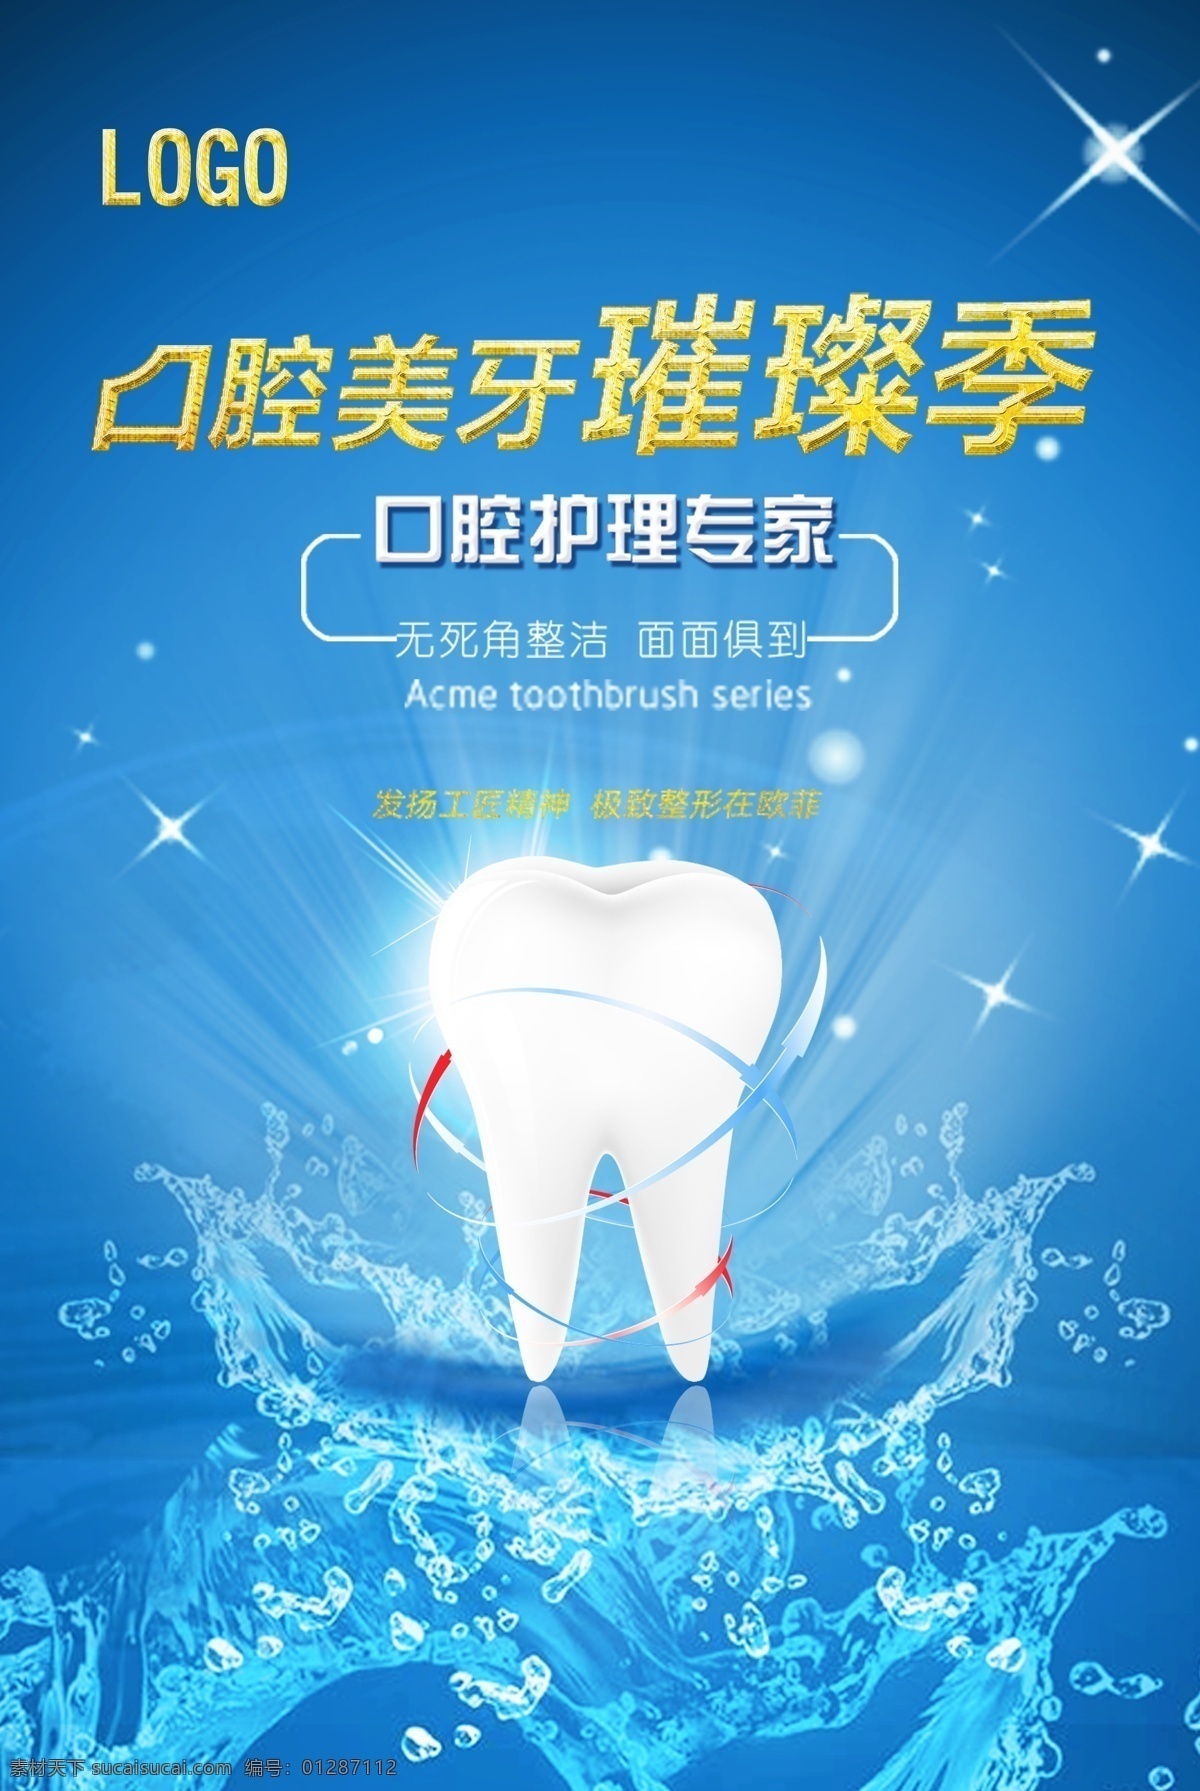 口腔 美 牙 宣传海报 关爱 牙齿 健康 洗牙 牙粉 牙白 治牙 植牙 种牙 海报 名片卡片